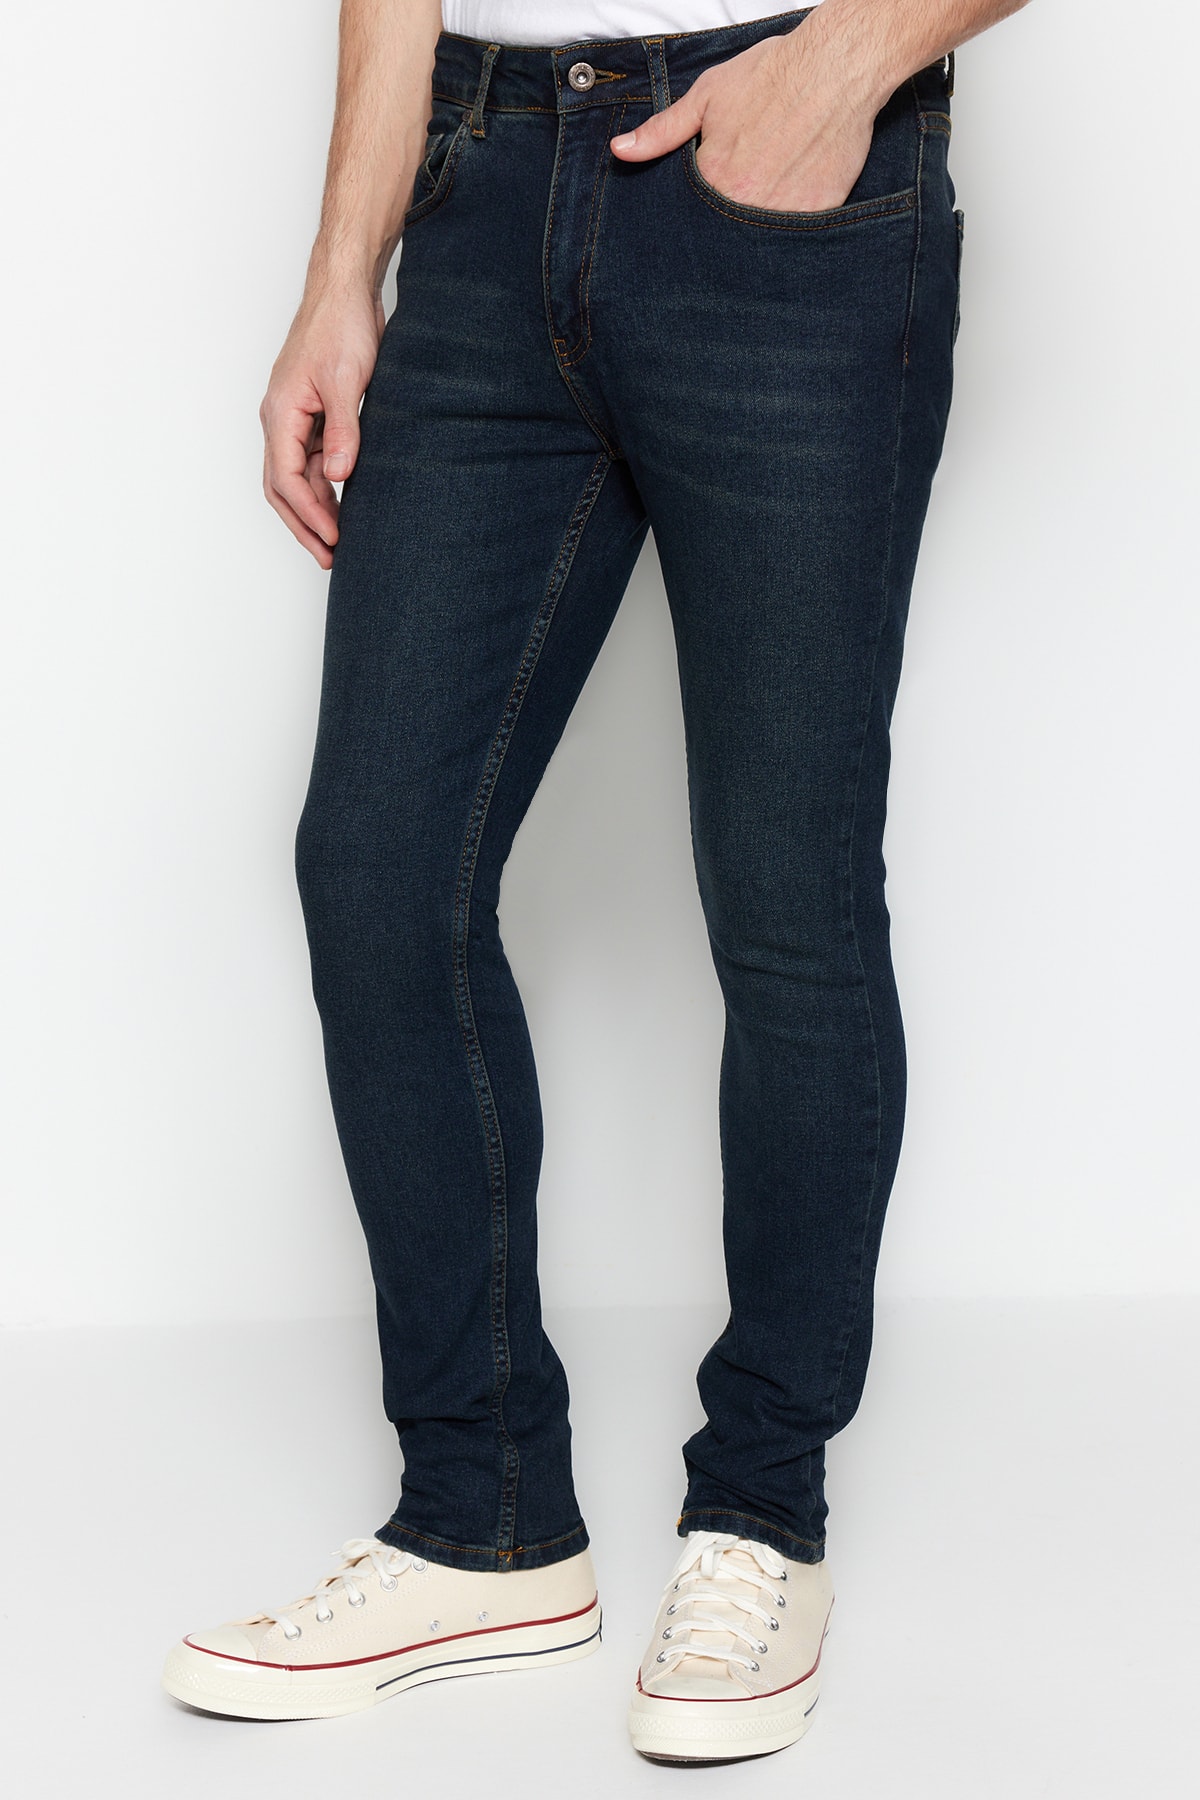 Джинсы Trendyol скинни, темно-синий джинсы скинни размер 42 синий